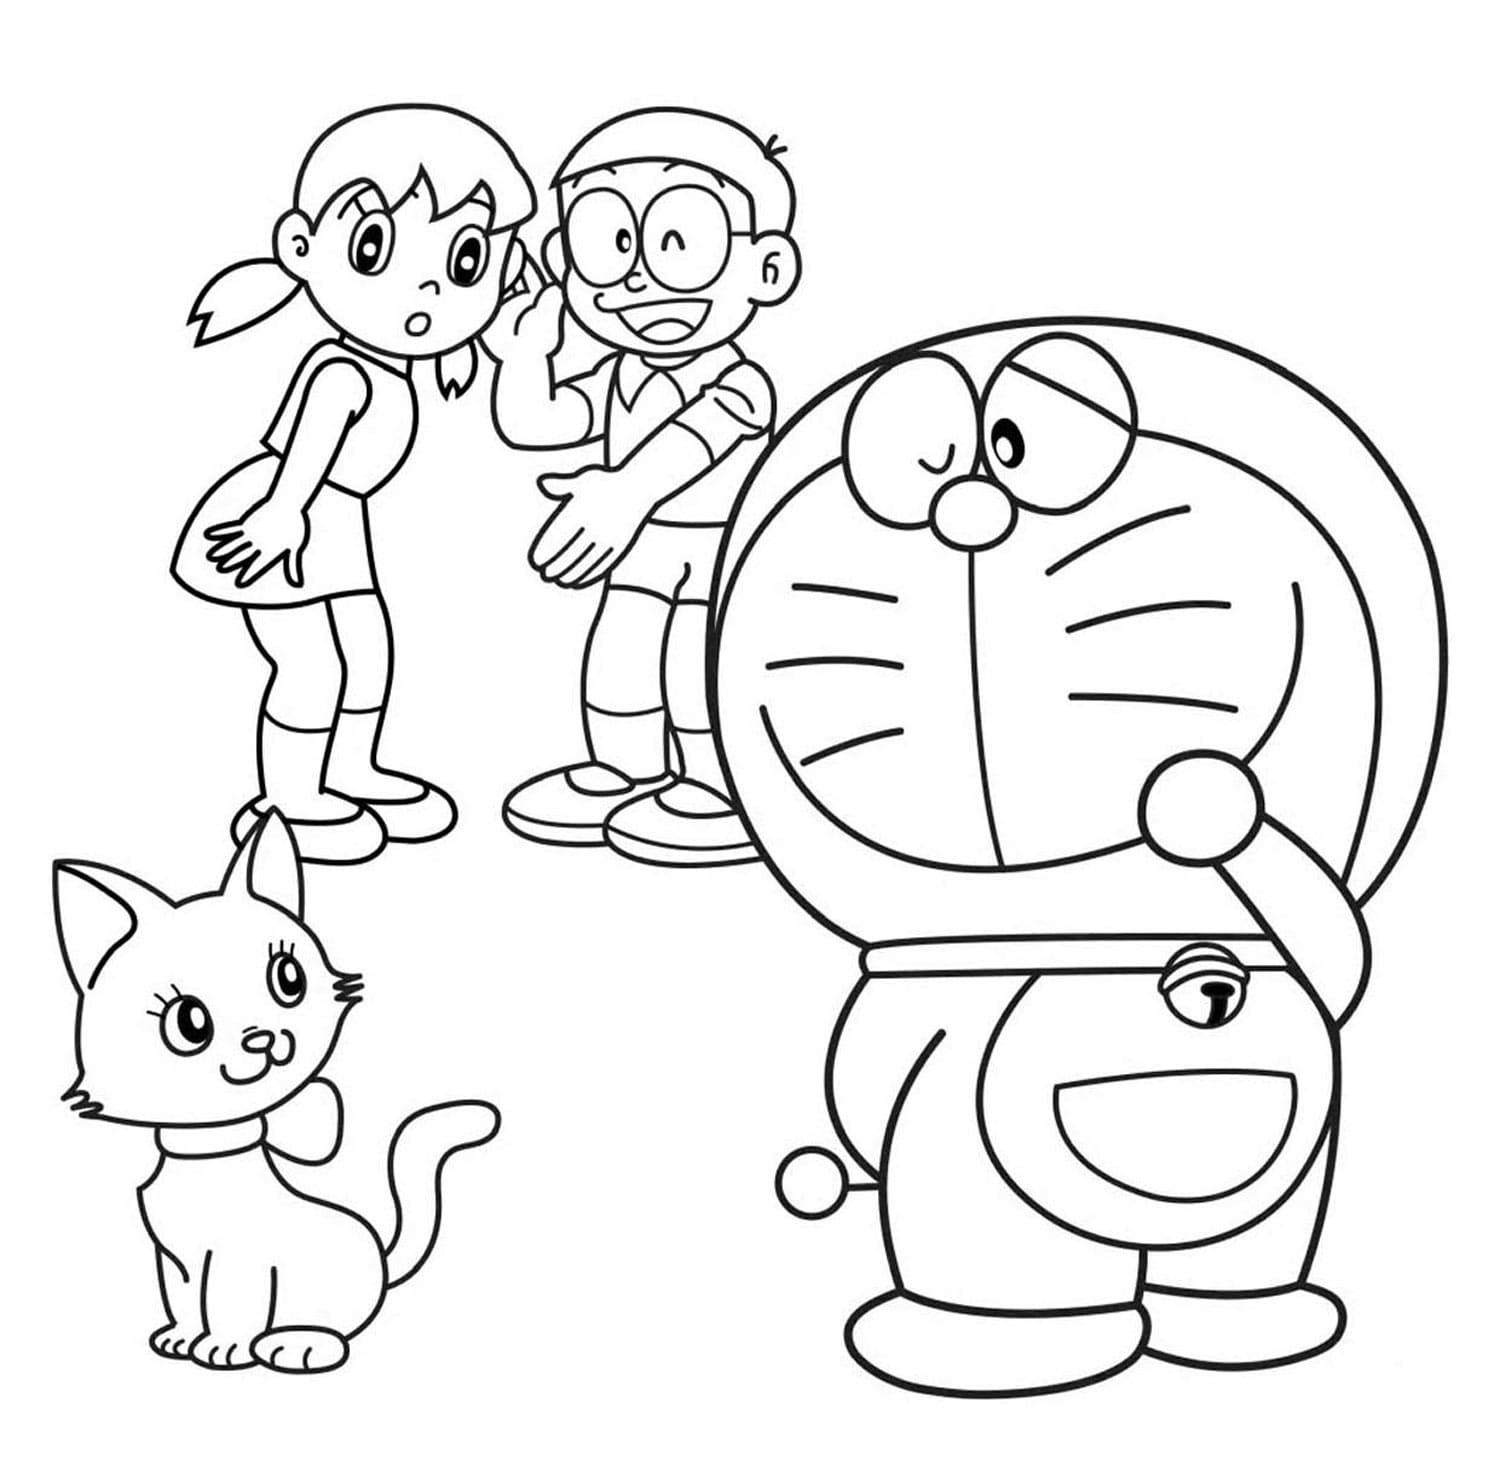 Nếu bạn đam mê vẽ tranh và là một fan hâm mộ của Doraemon thì trang vẽ tranh Doraemon này chắc chắn sẽ làm bạn thích thú. Trang web cung cấp nhiều hình ảnh và mẫu Doraemon khác nhau để bạn thoả sức sáng tạo.